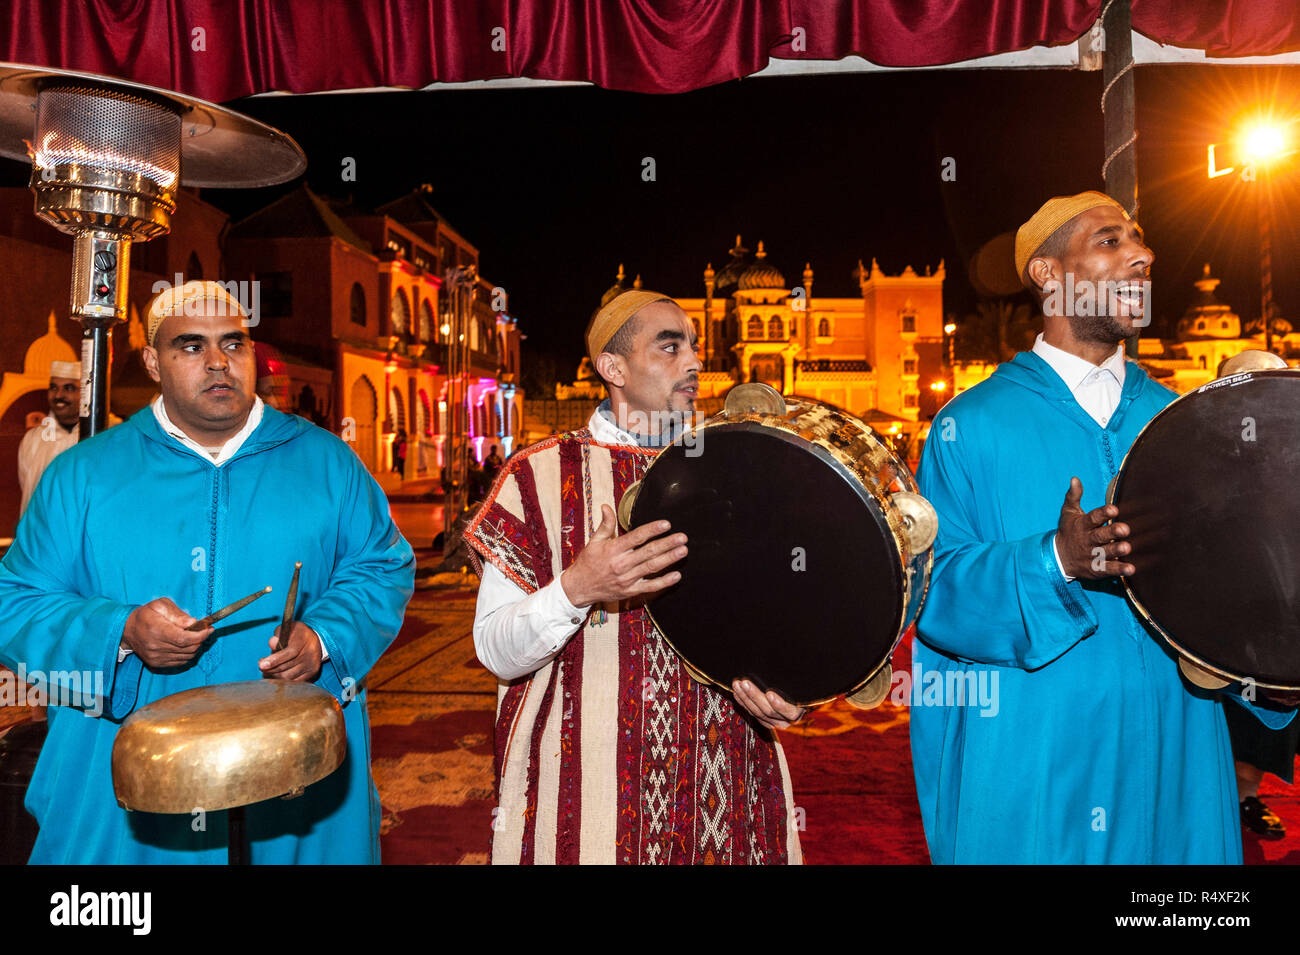 26-02-15, Marrakech, Marocco. Animazione Turistica al Chez Ali spettacolo Fantasia. Gli ospiti sono intrattenuti da canti e danze di gruppi folk, un essere Foto Stock